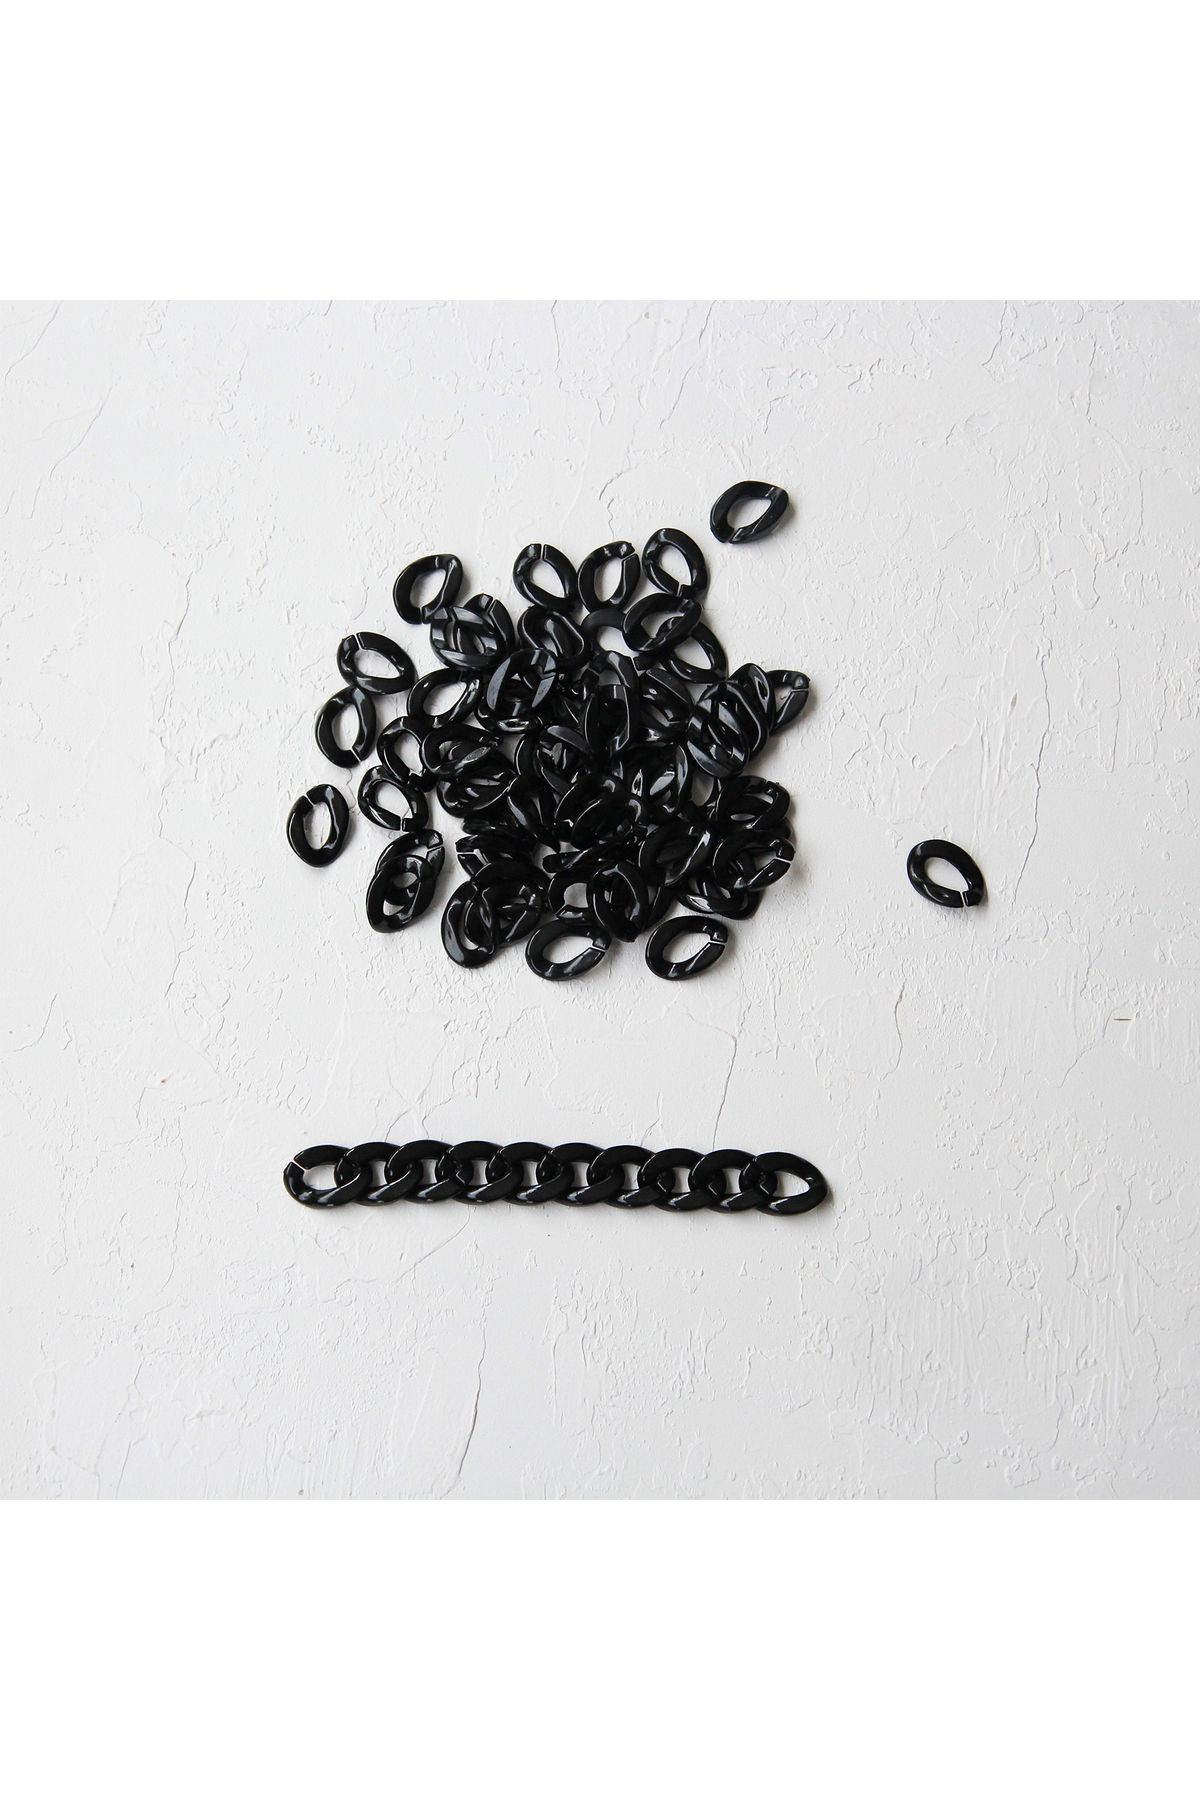 Bimotif Siyah Akrilik Zincir Halkası, 100 Gram